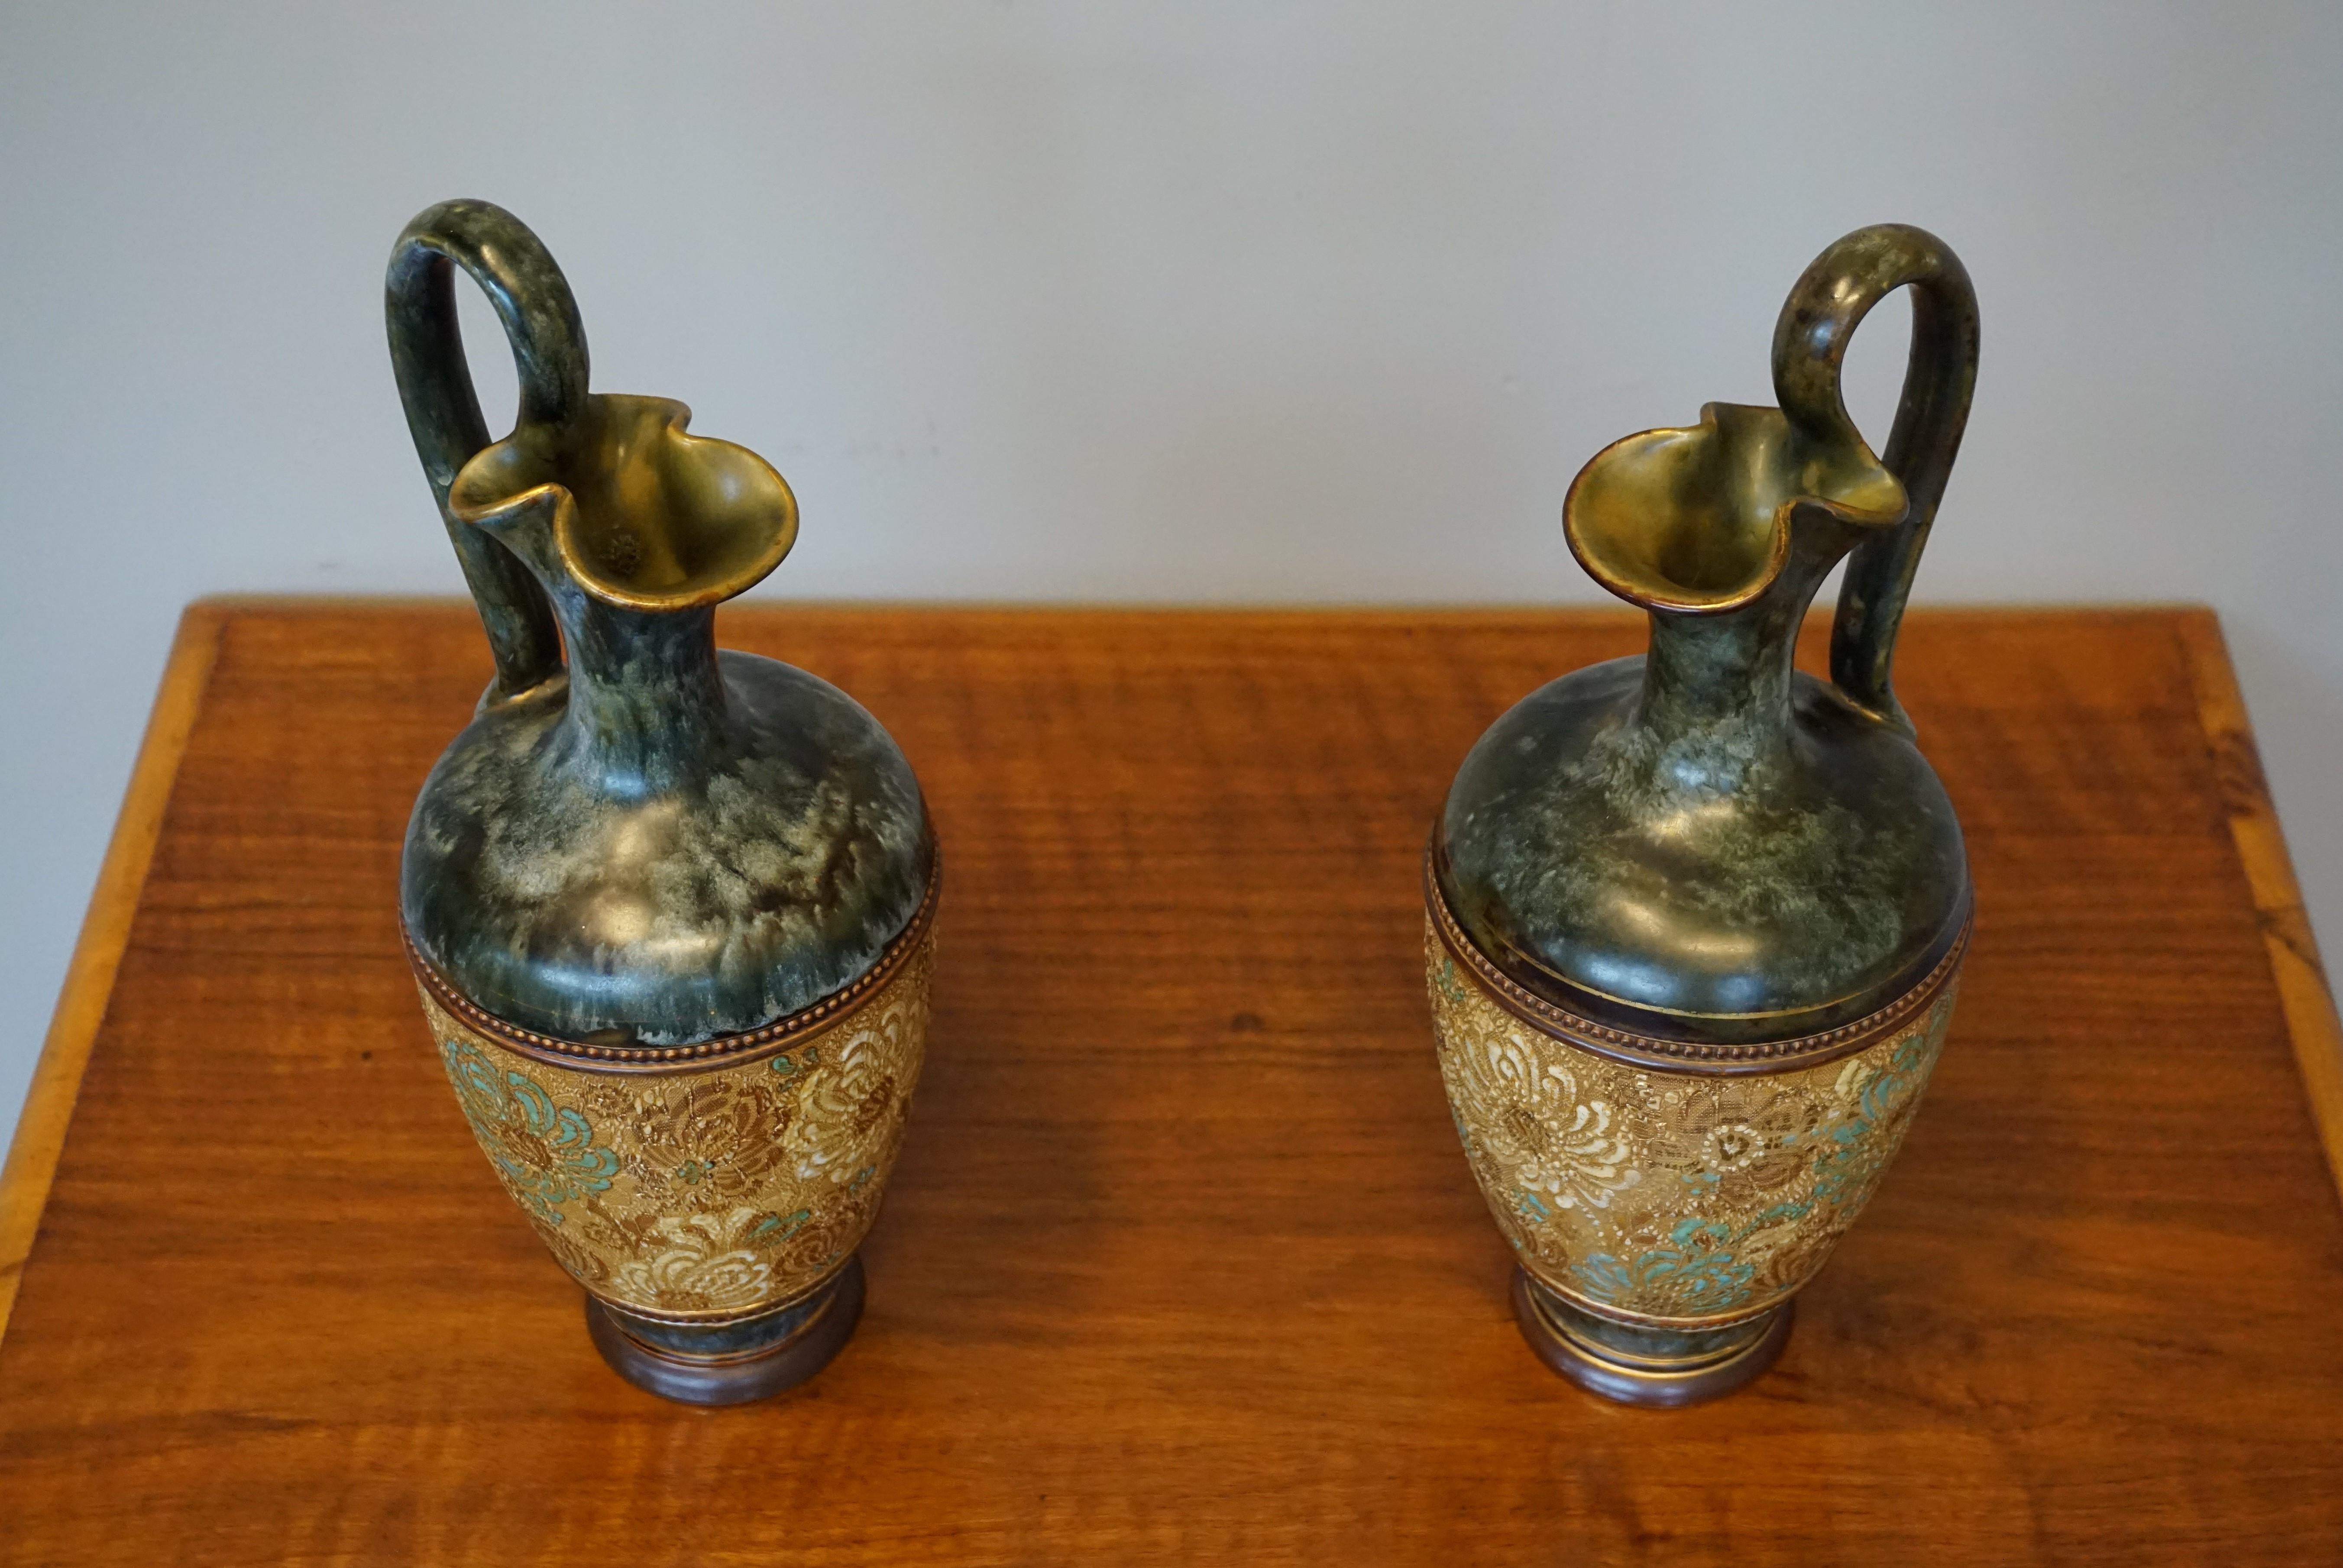 Merveilleuse paire de vases artisanaux du 19ème siècle.

Lorsqu'il s'agit de poteries vraiment élégantes et magnifiques, rien n'est aussi attrayant que les pièces créées en Europe au tournant du siècle. Les dessins, les couleurs et la qualité